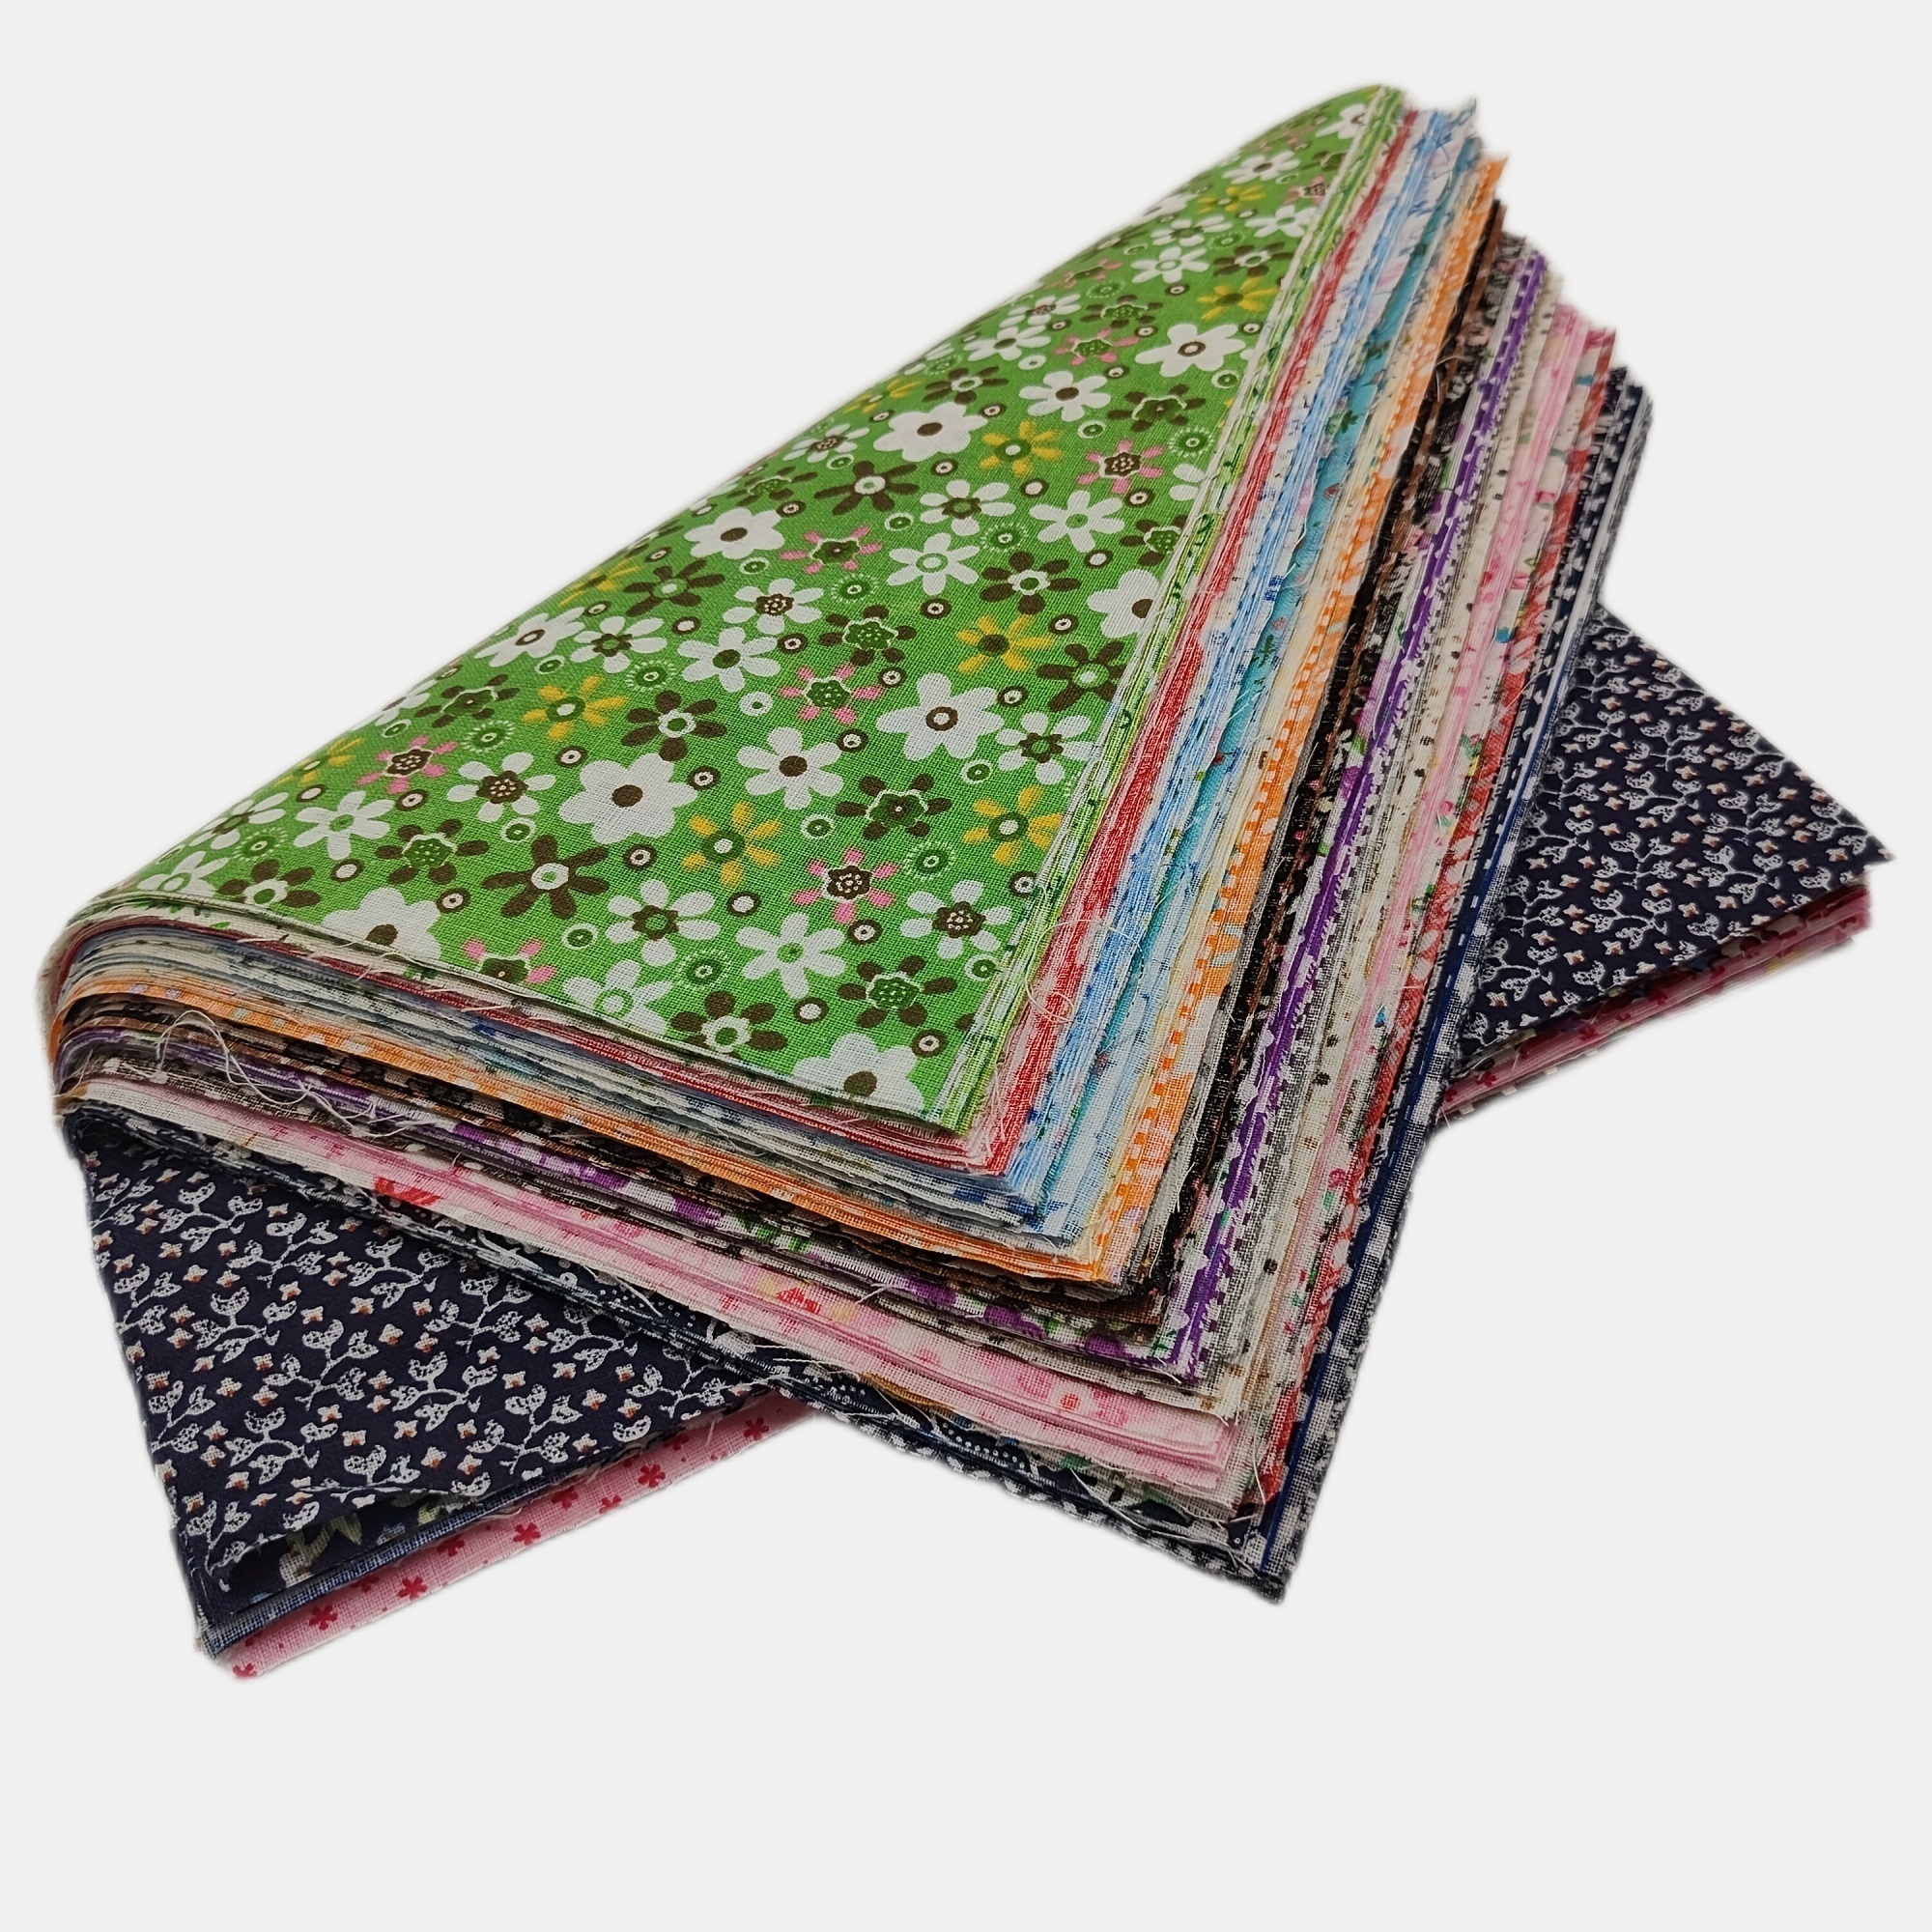  liuqingwind 50 piezas de tela de algodón DIY hecho a mano  patchwork acolchado artesanía álbum de recortes tela de costura tejido para  patchwork, acolchar cuadrados paquetes verdes : Arte y Manualidades